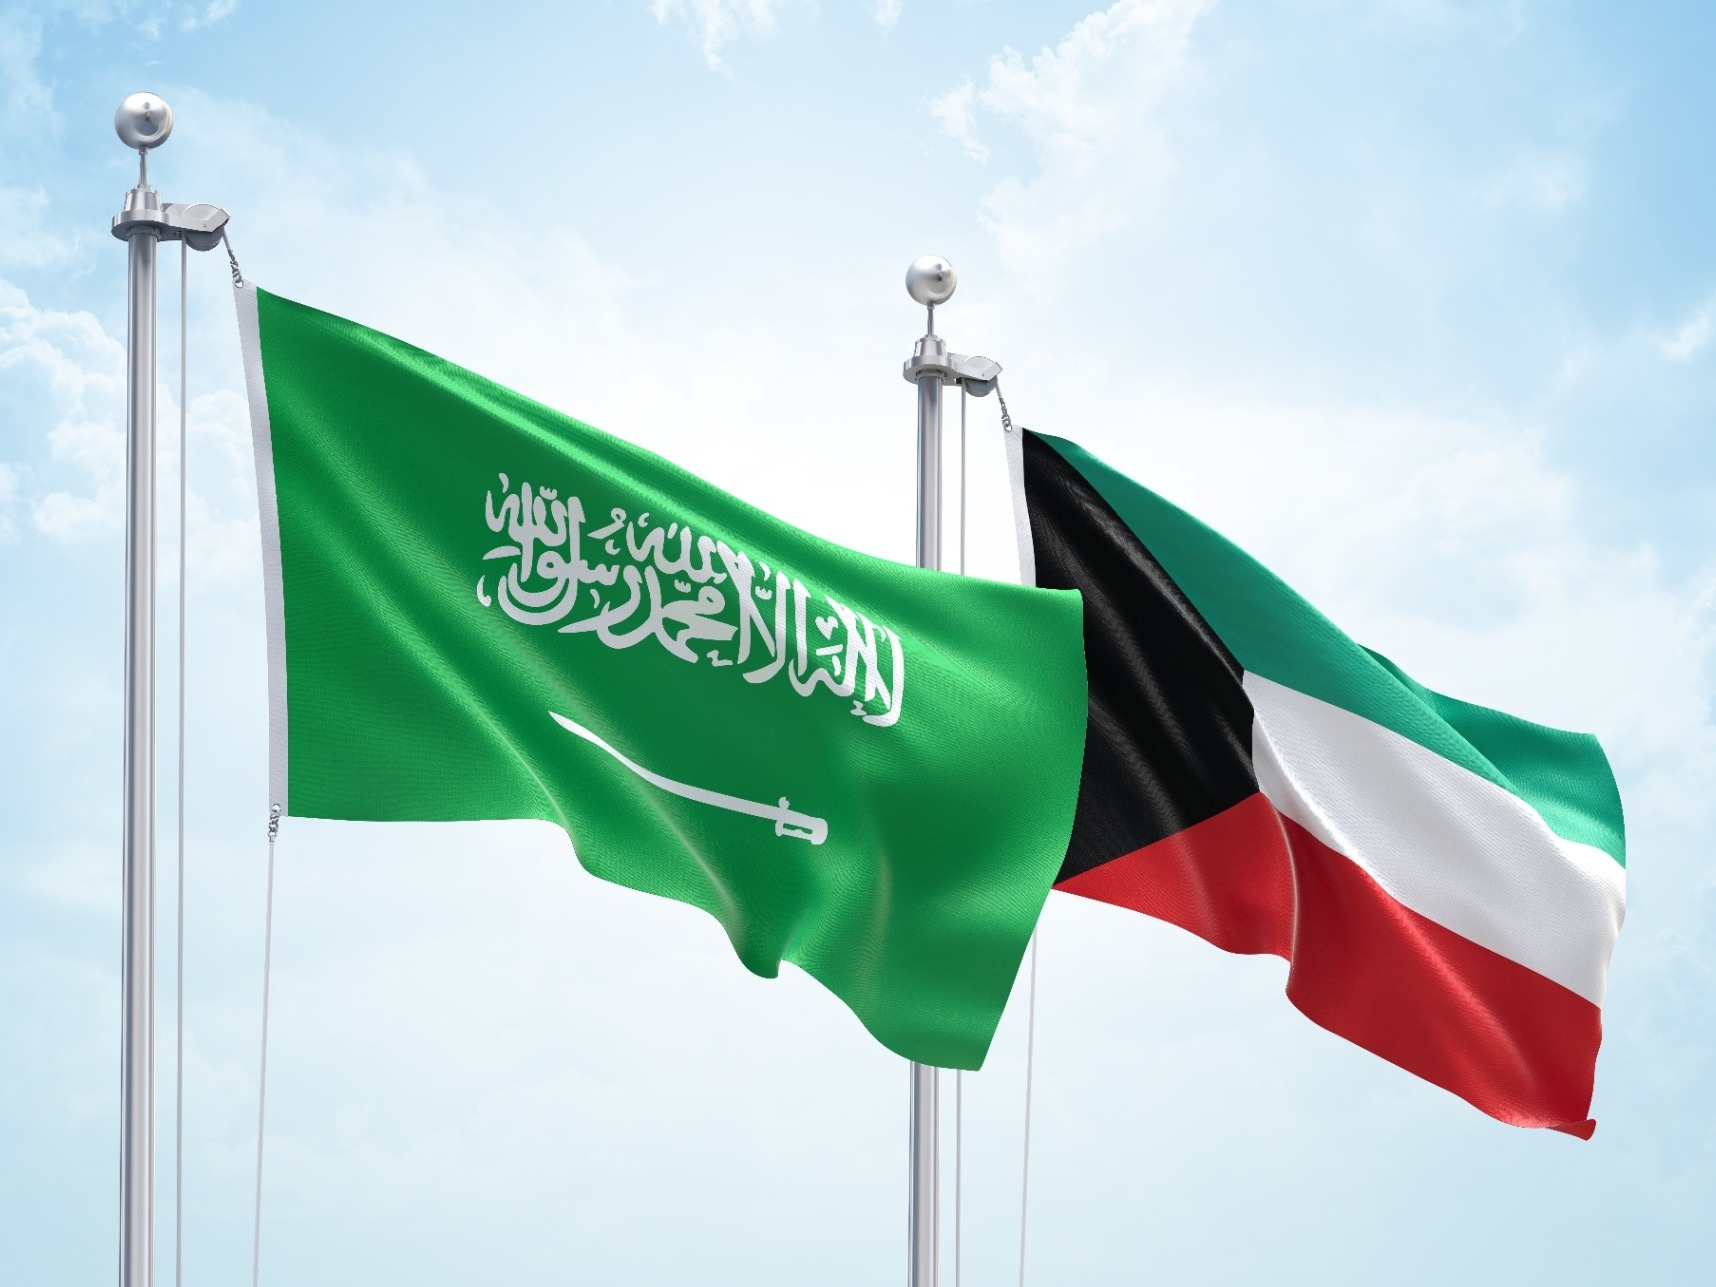 الداخلية الكويتية تعلن إحالة مُغرِّد للجهة المختصة بعد تغريداته المسيئة تجاه رمز سعودي